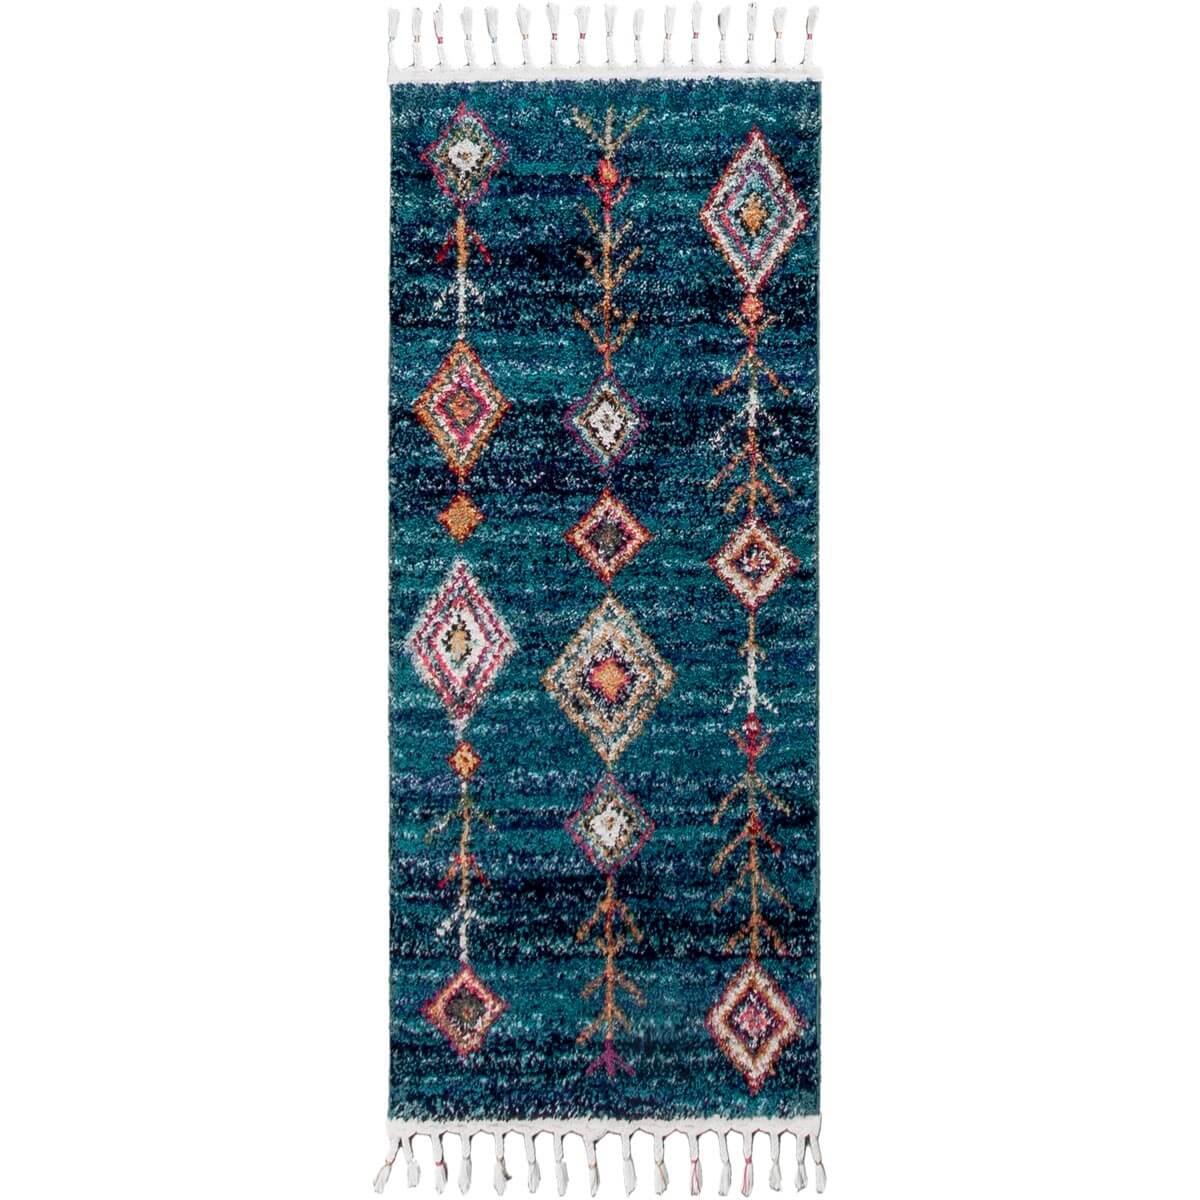 שטיח מיקונוס 01 כחול ראנר עם פרנזים | השטיח האדום